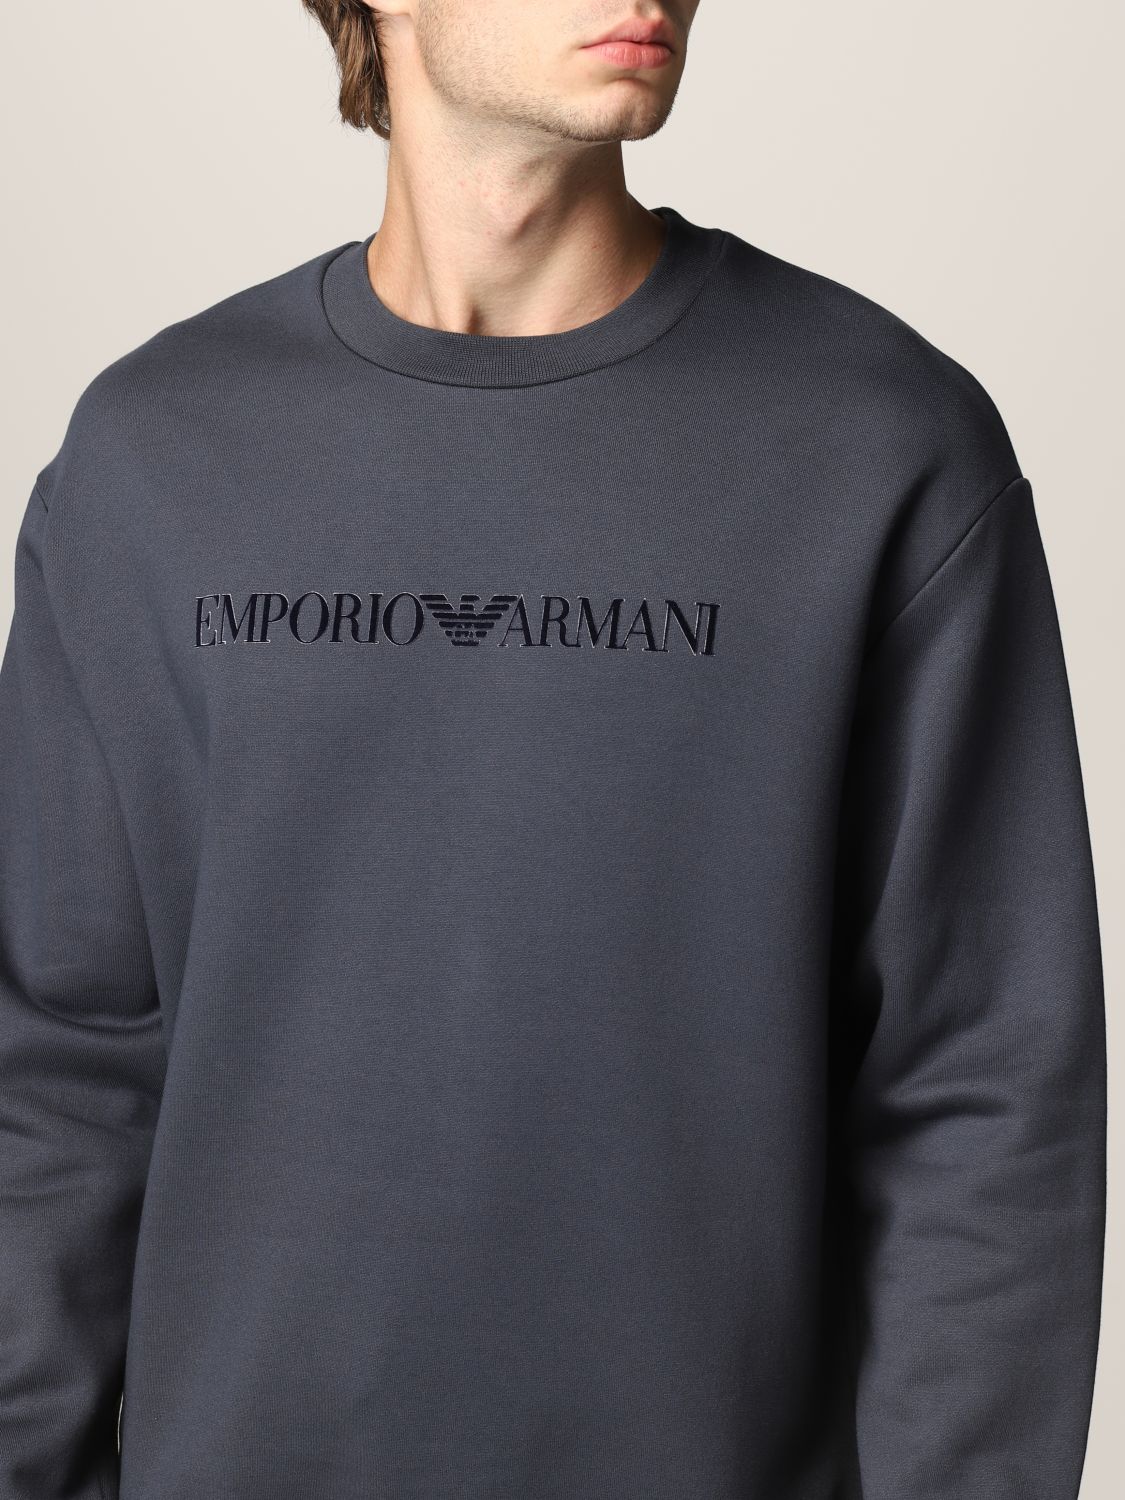 Sweatshirt Emporio Armani: Sweatshirt homme Emporio Armani indigo 3